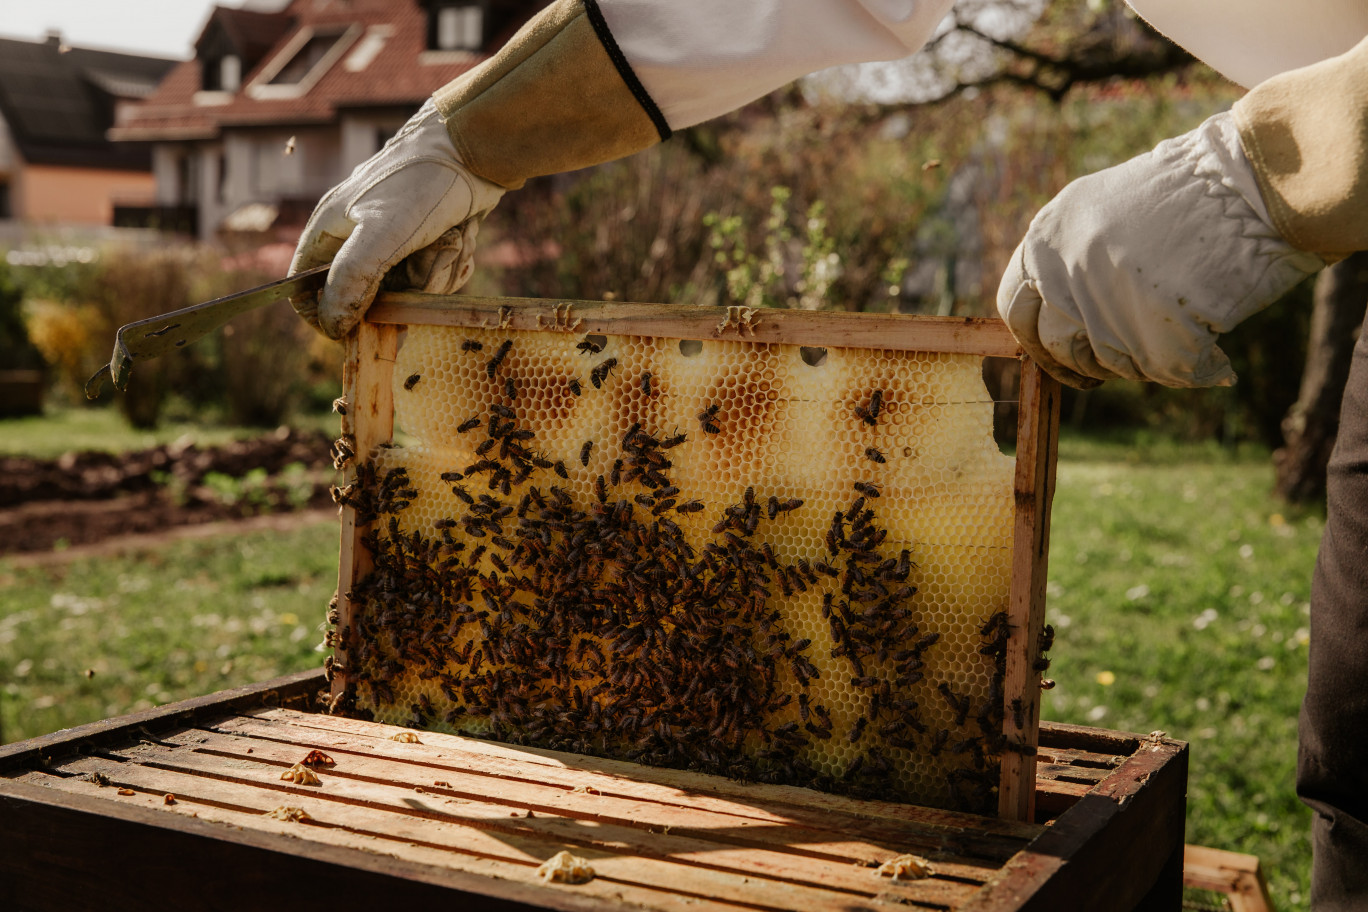 La municipalité de Rives-en-Seine installe de nouvelles ruches d’abeilles Buckfast.